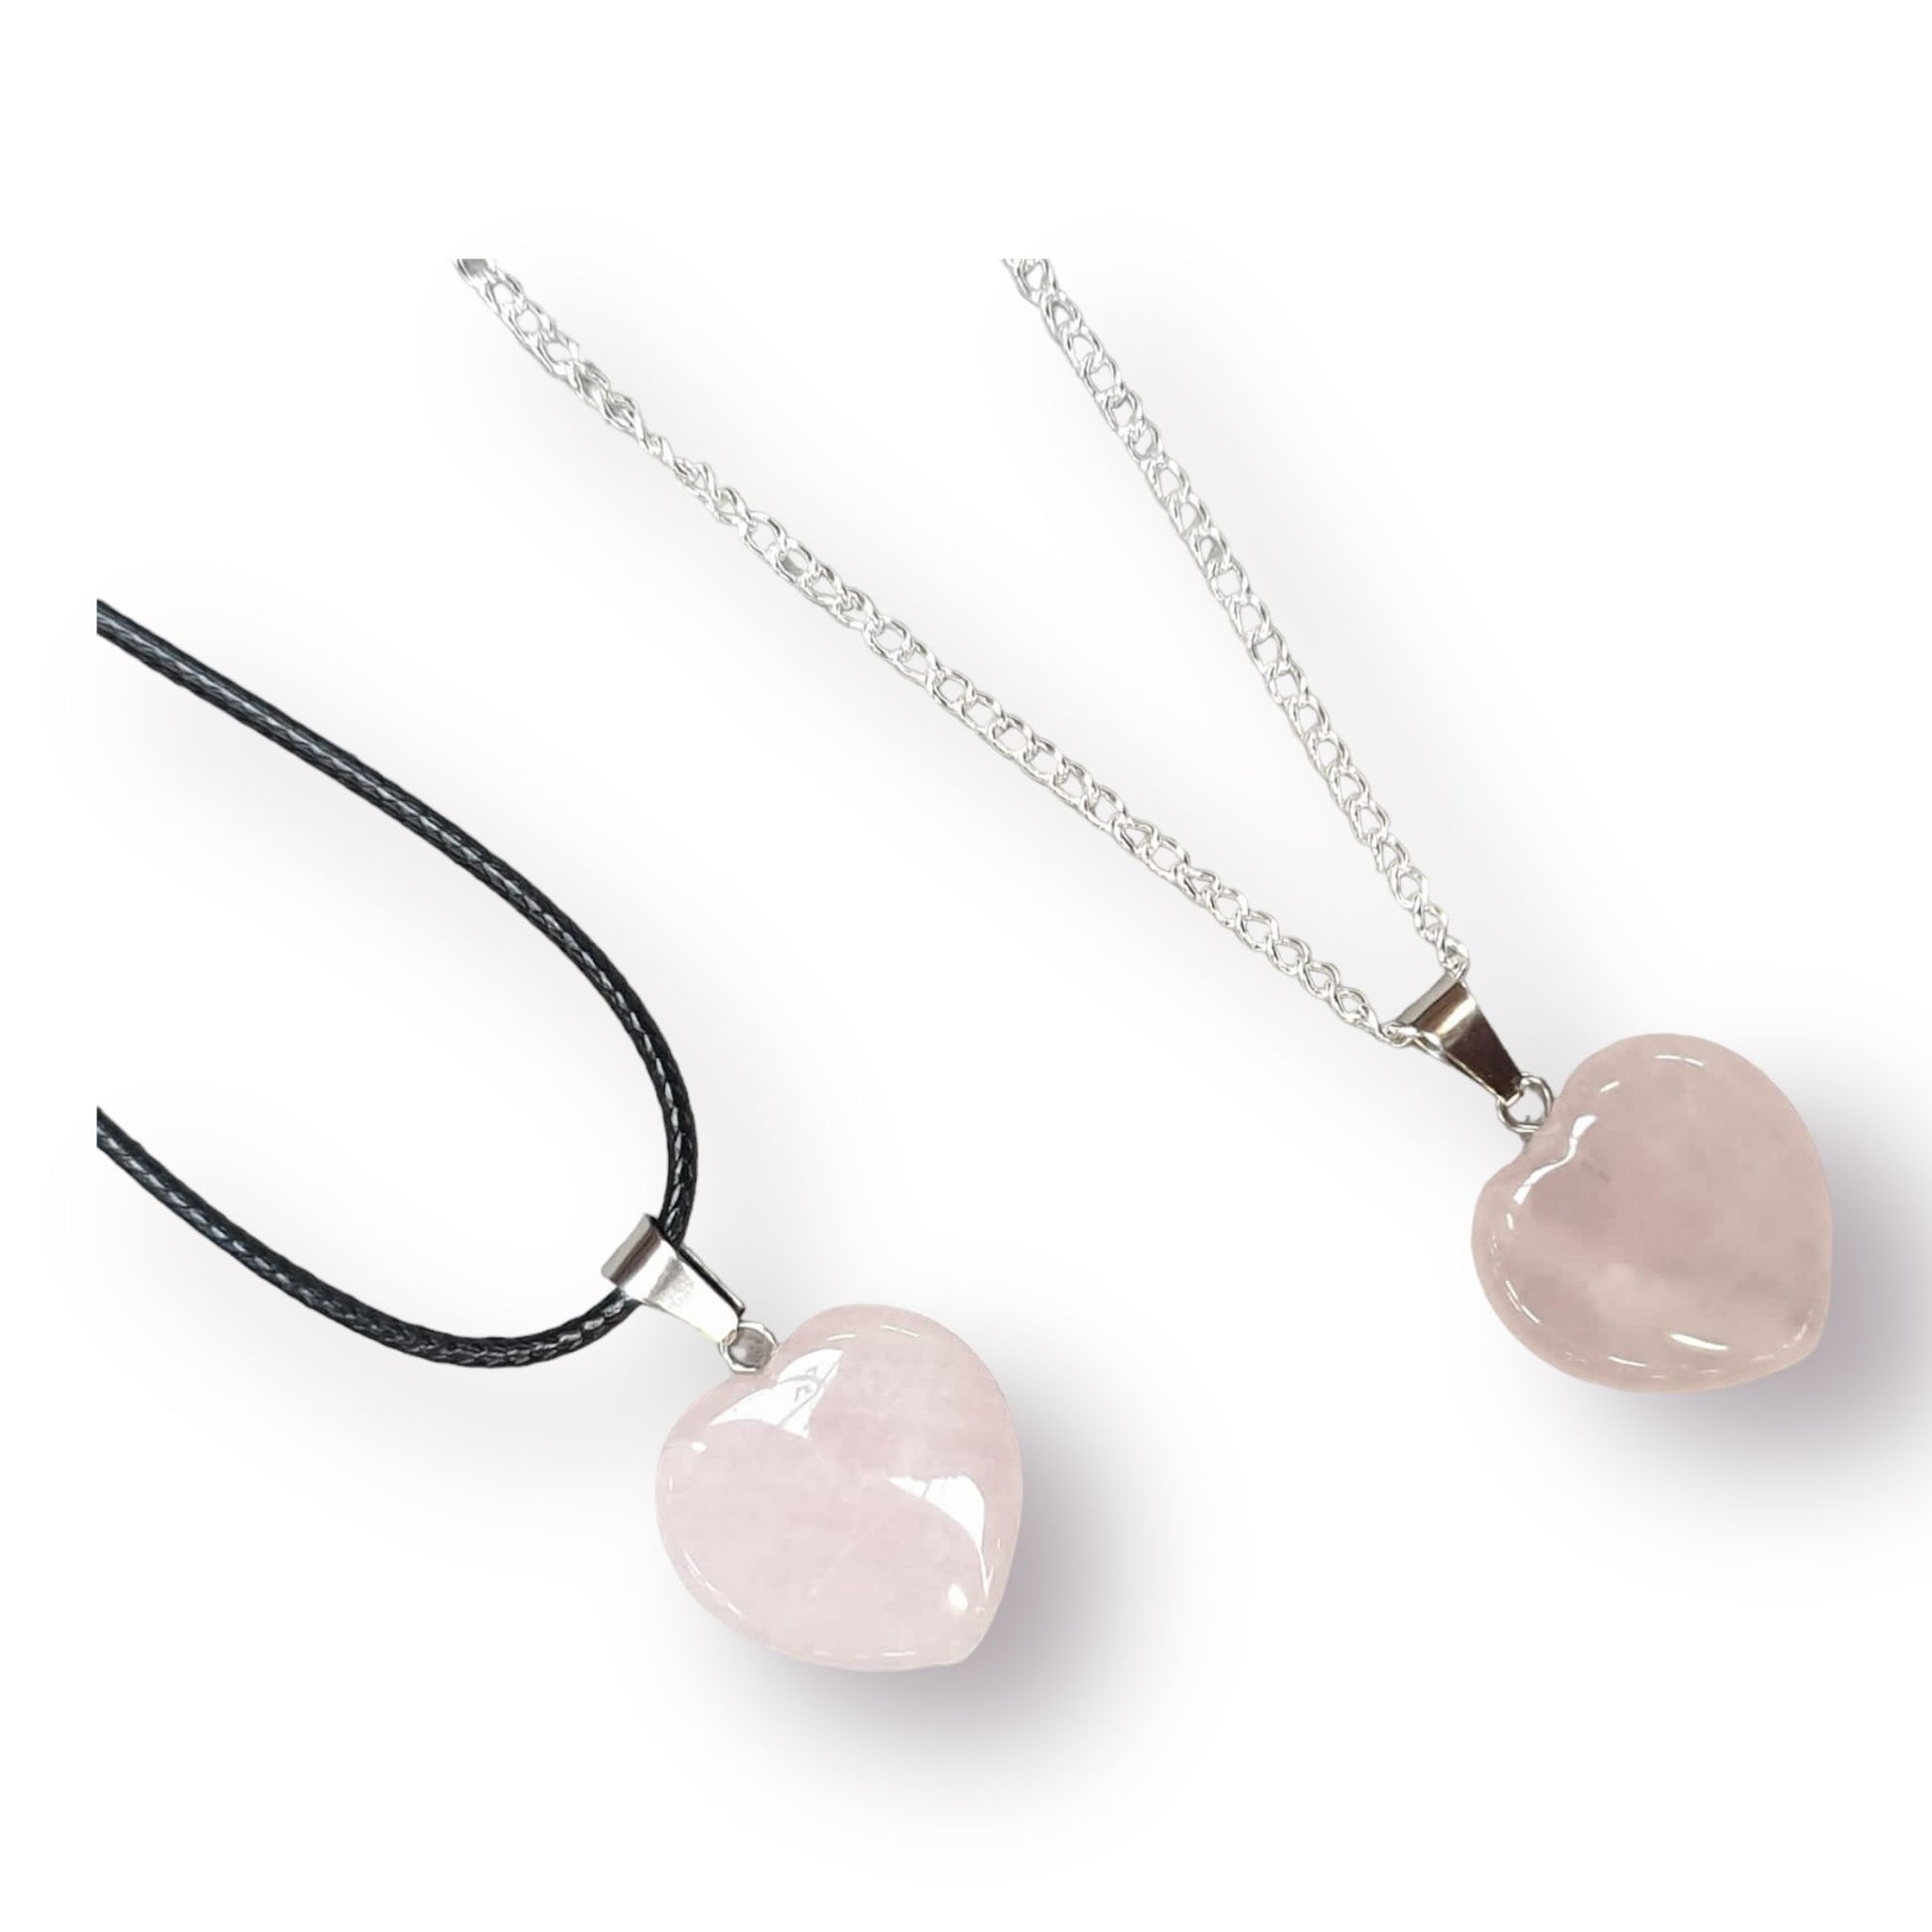 Rose Quartz Heart Gemstone Necklace Chain Options - Premium  from Uniquely Holt - Just £5.99! Shop now at Uniquely Holt